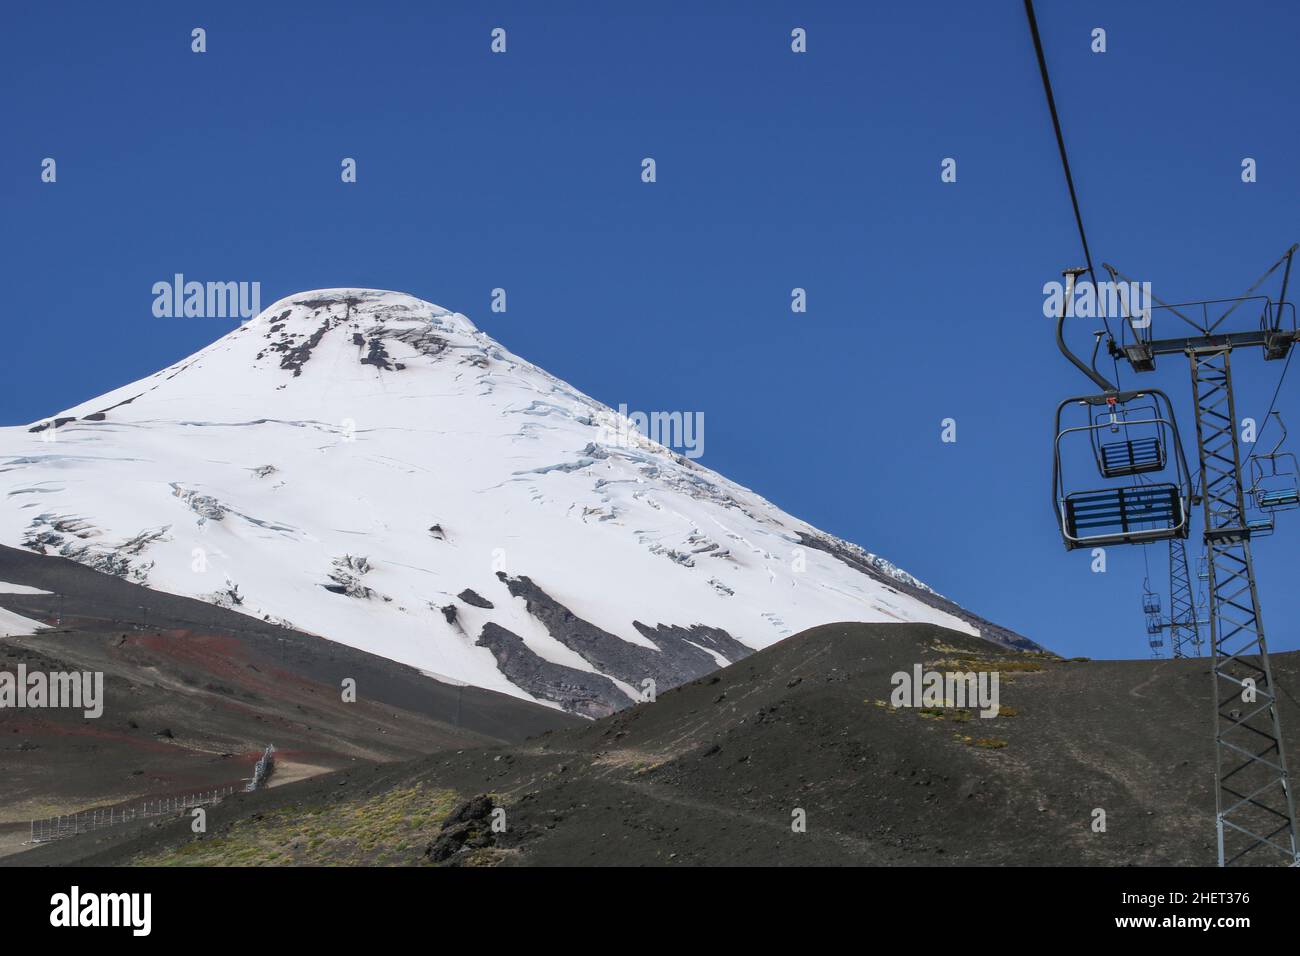 Vista panorámica del volcán nevado Lanin con paisaje en primer plano Foto de stock